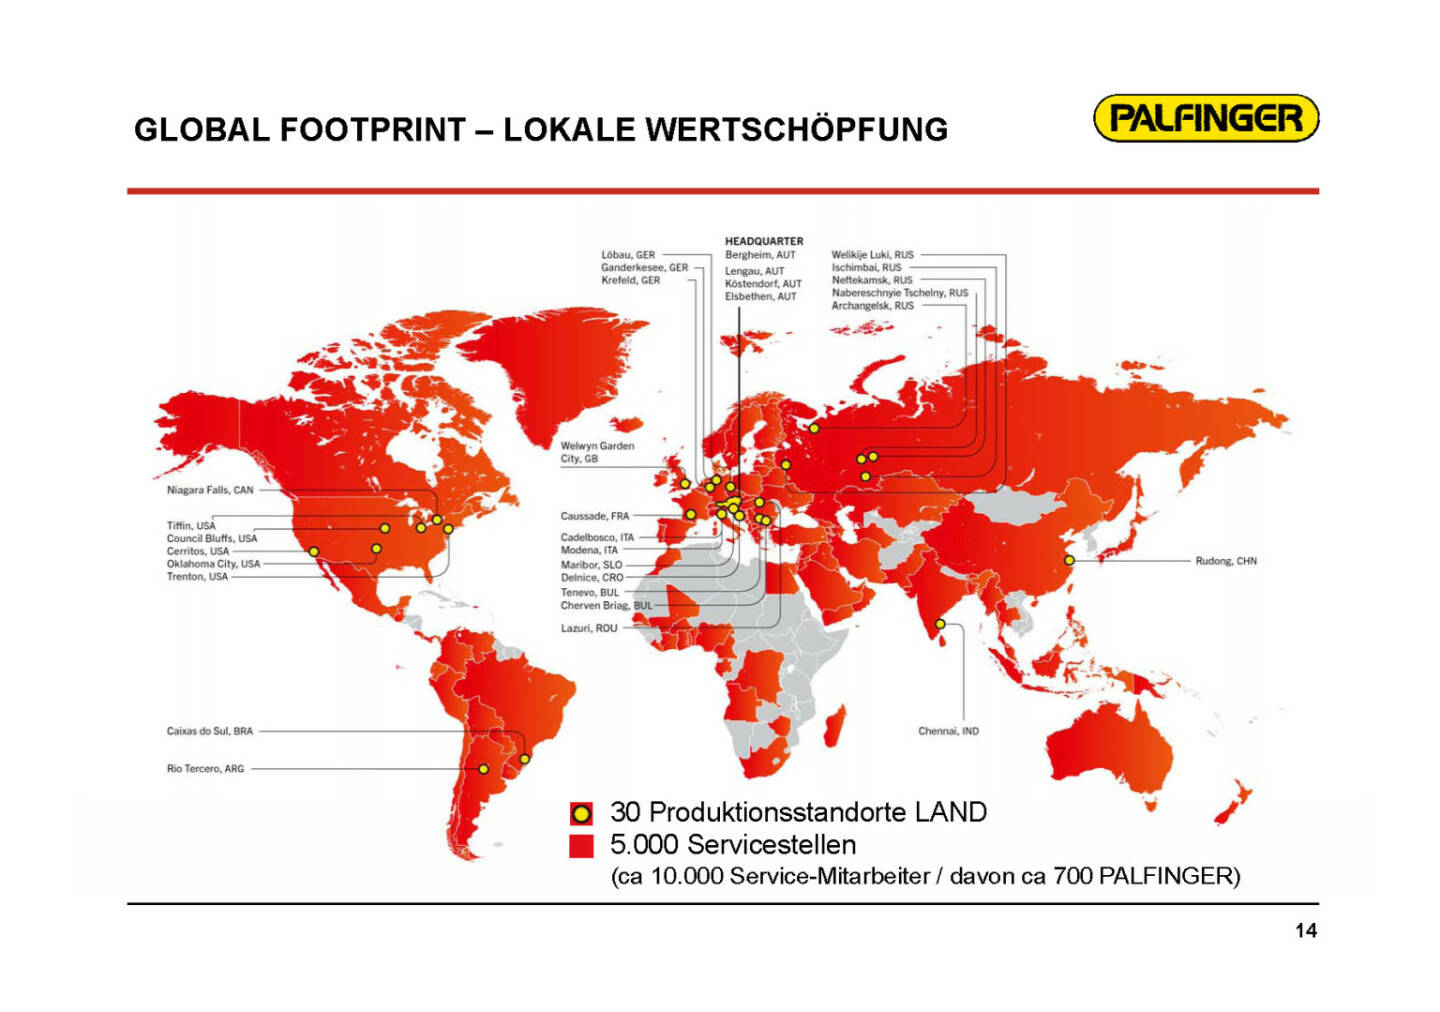 Palfinger - Global Footprint